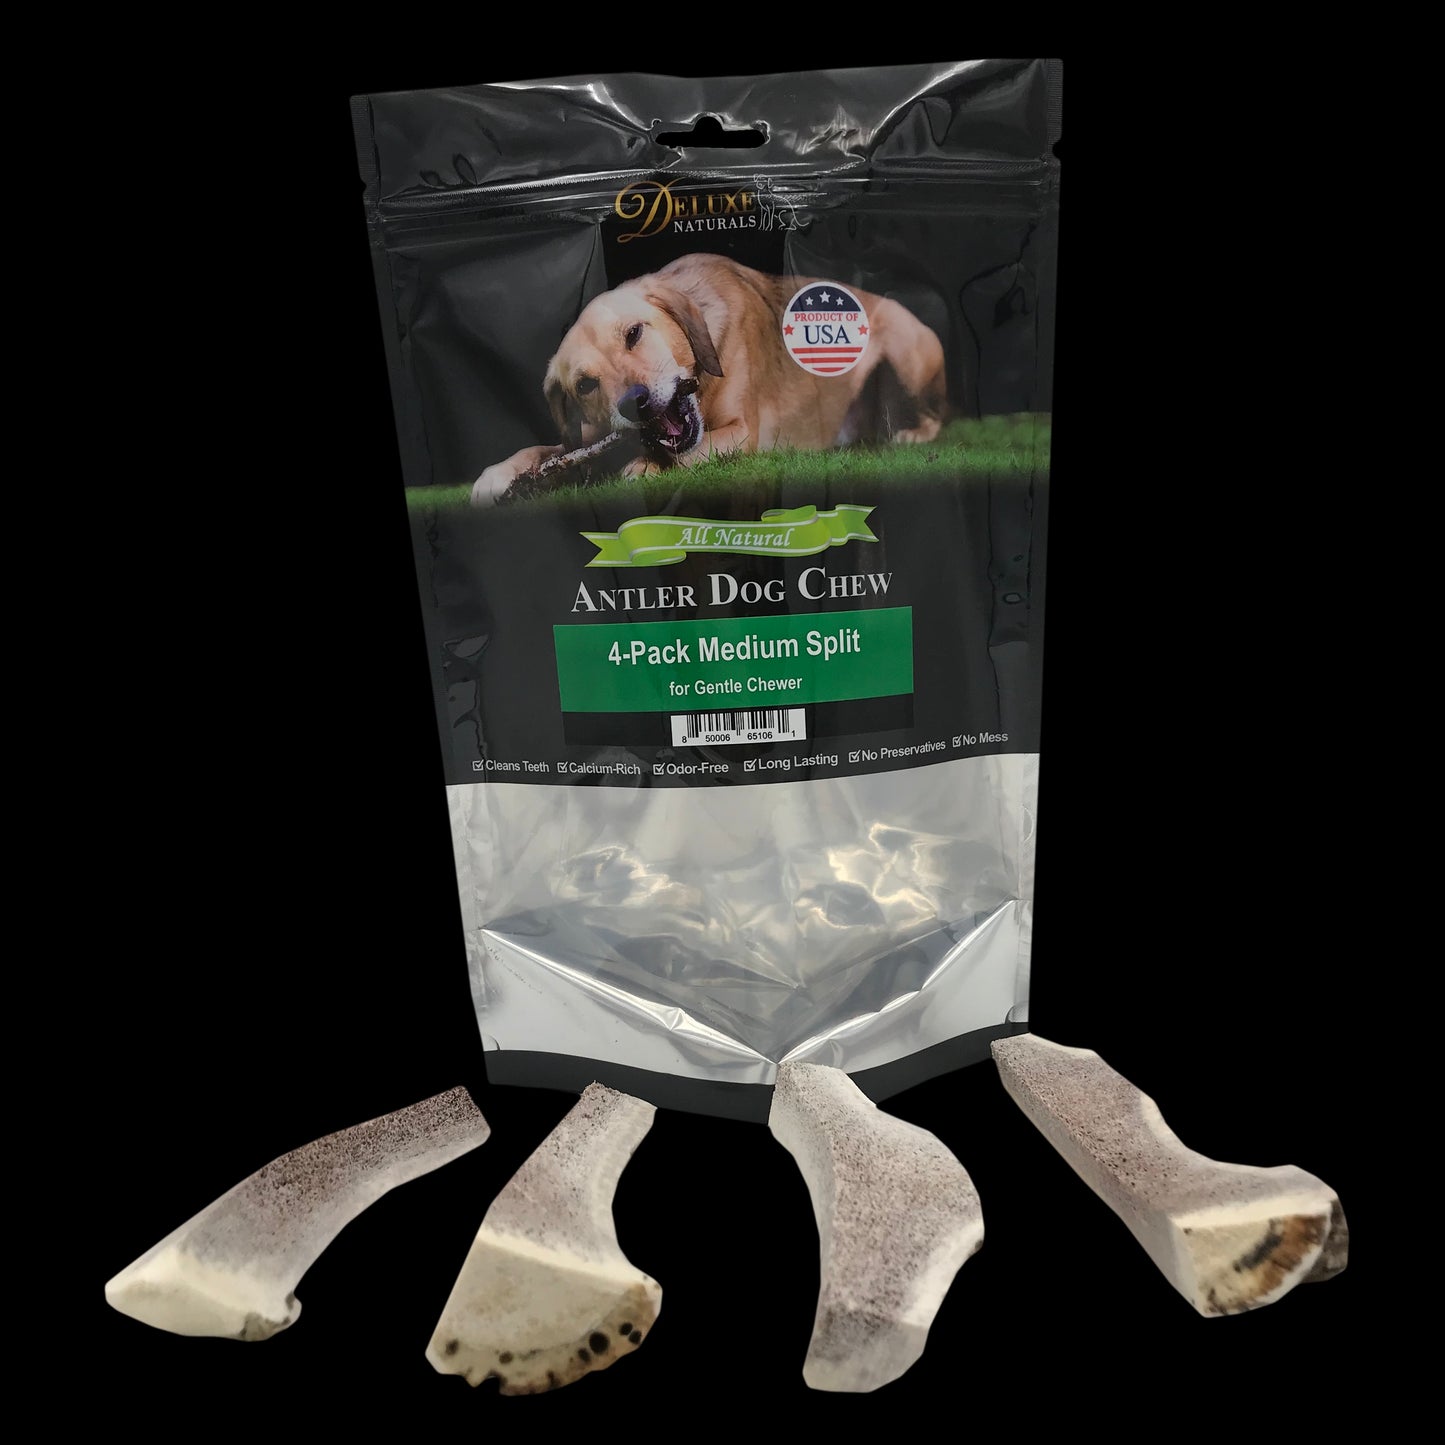 Deluxe Naturals 4-Pack Elk Antler Dog Chew - Medium Split